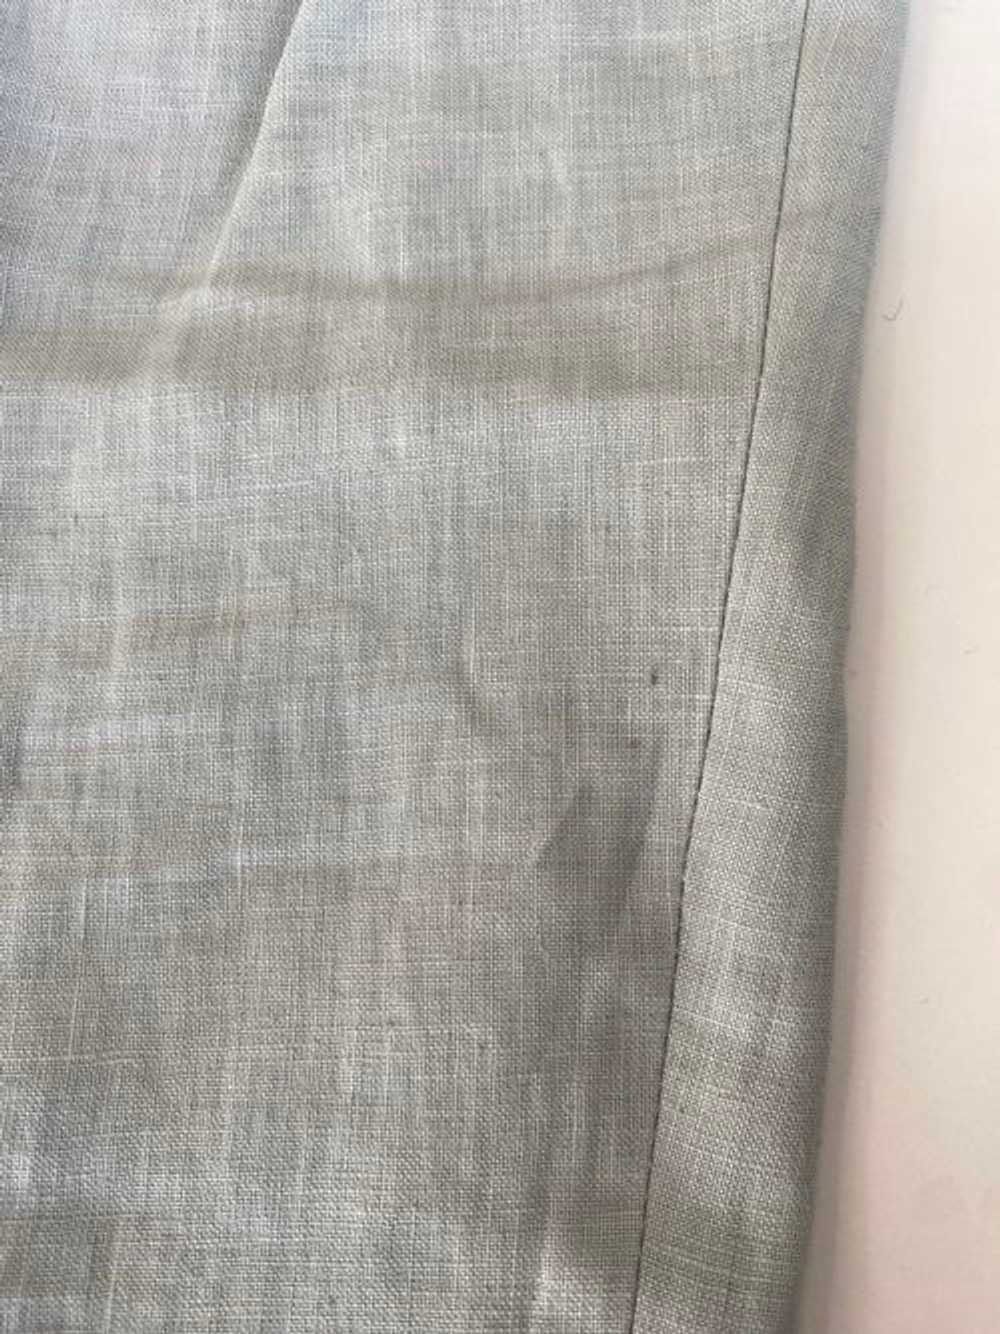 Kirrin Finch Light Gray Linen Pants - image 4